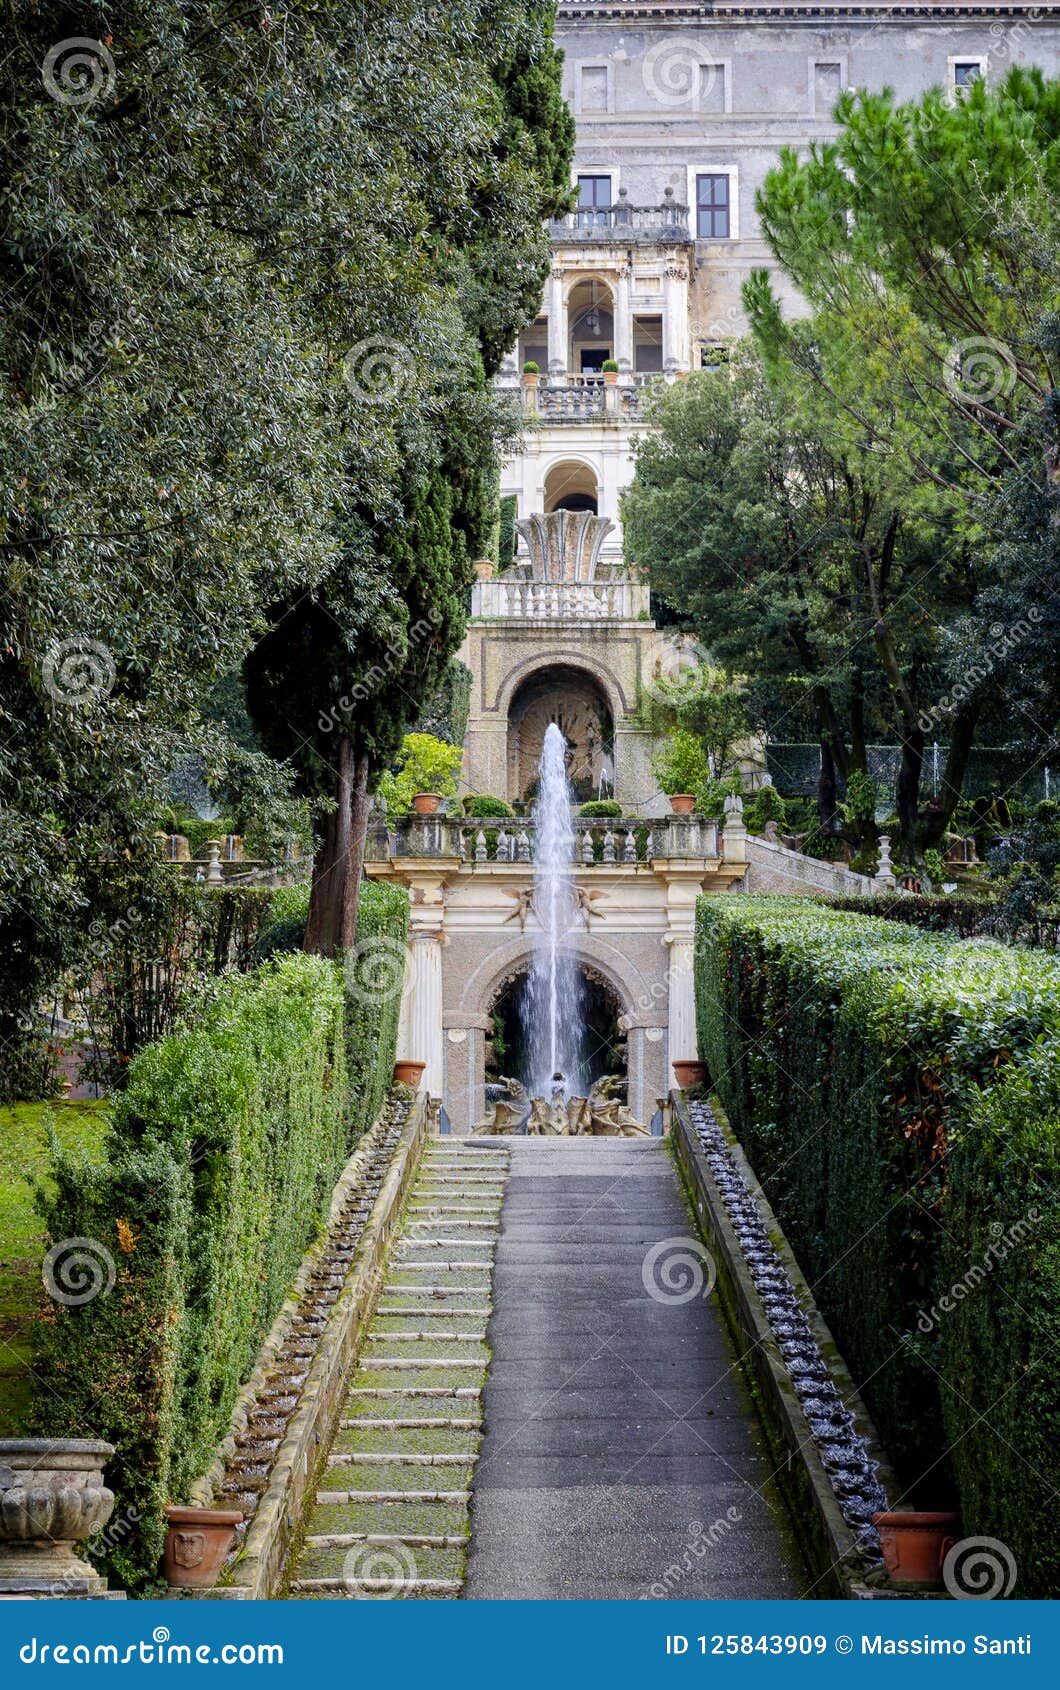 Villa D Este In Tivoli Rome Italy Stock Image Image Of Culture